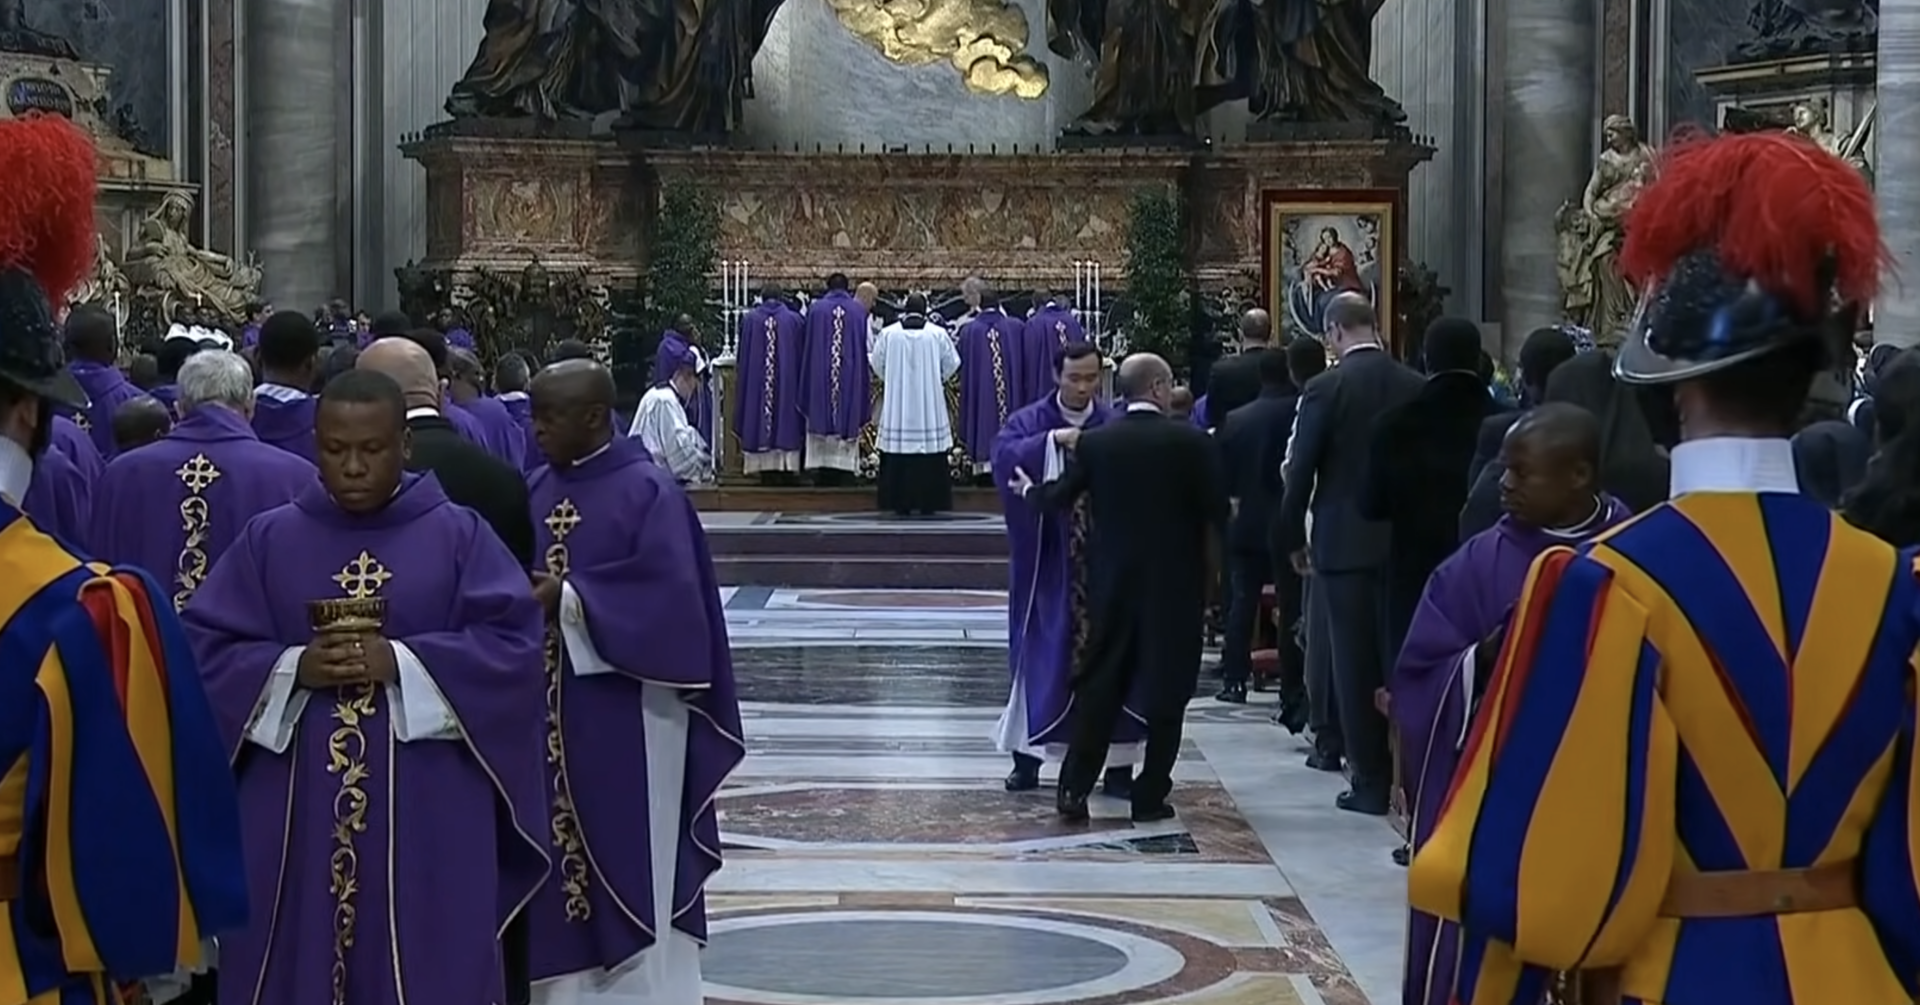 Une messe en rite zaïrois, le 1er décembre 2019, à St-Pierre de Rome | capture d'écran KTO-TV